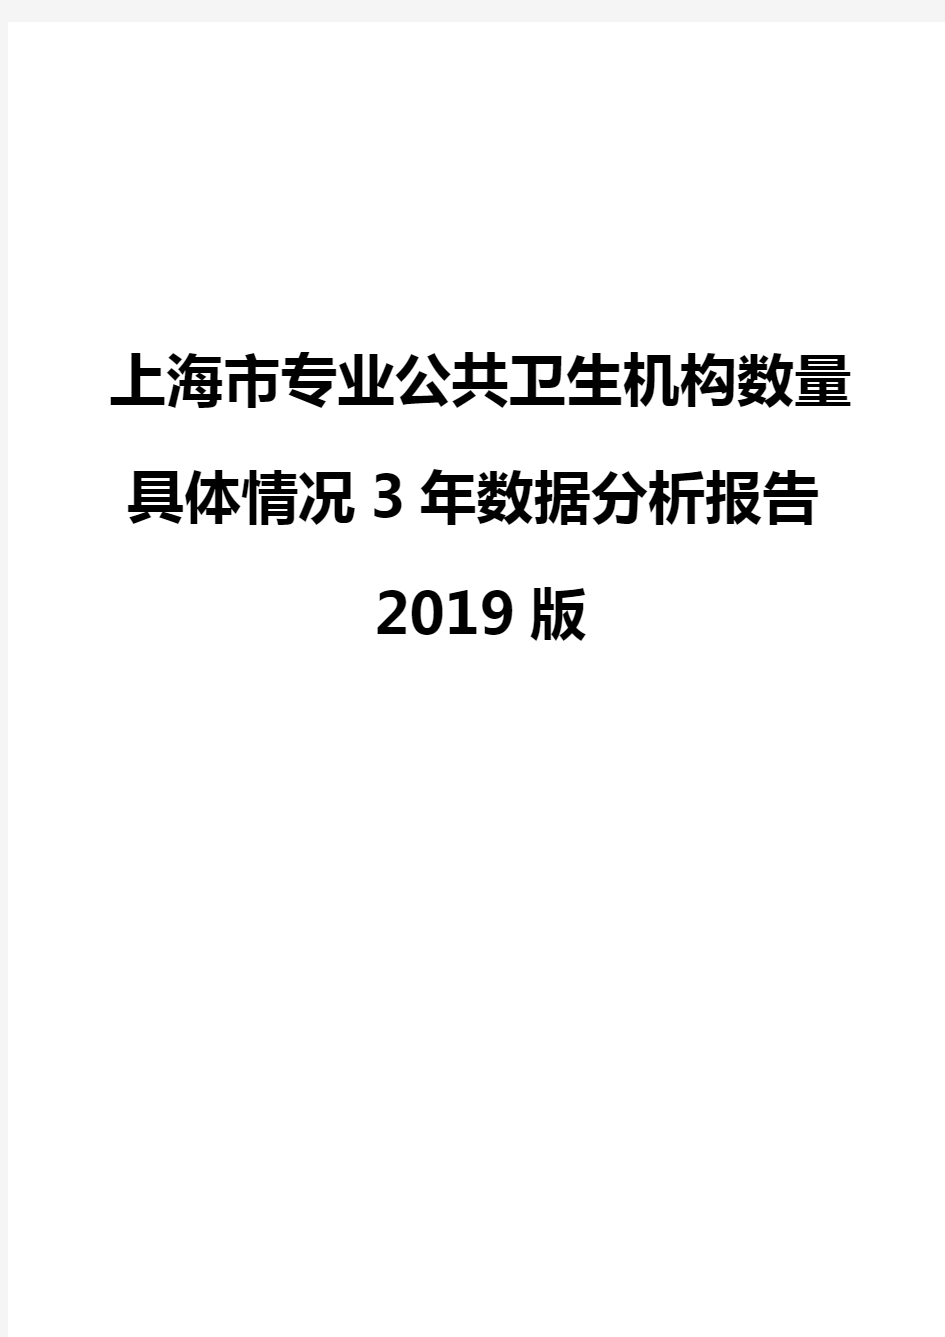 上海市专业公共卫生机构数量具体情况3年数据分析报告2019版